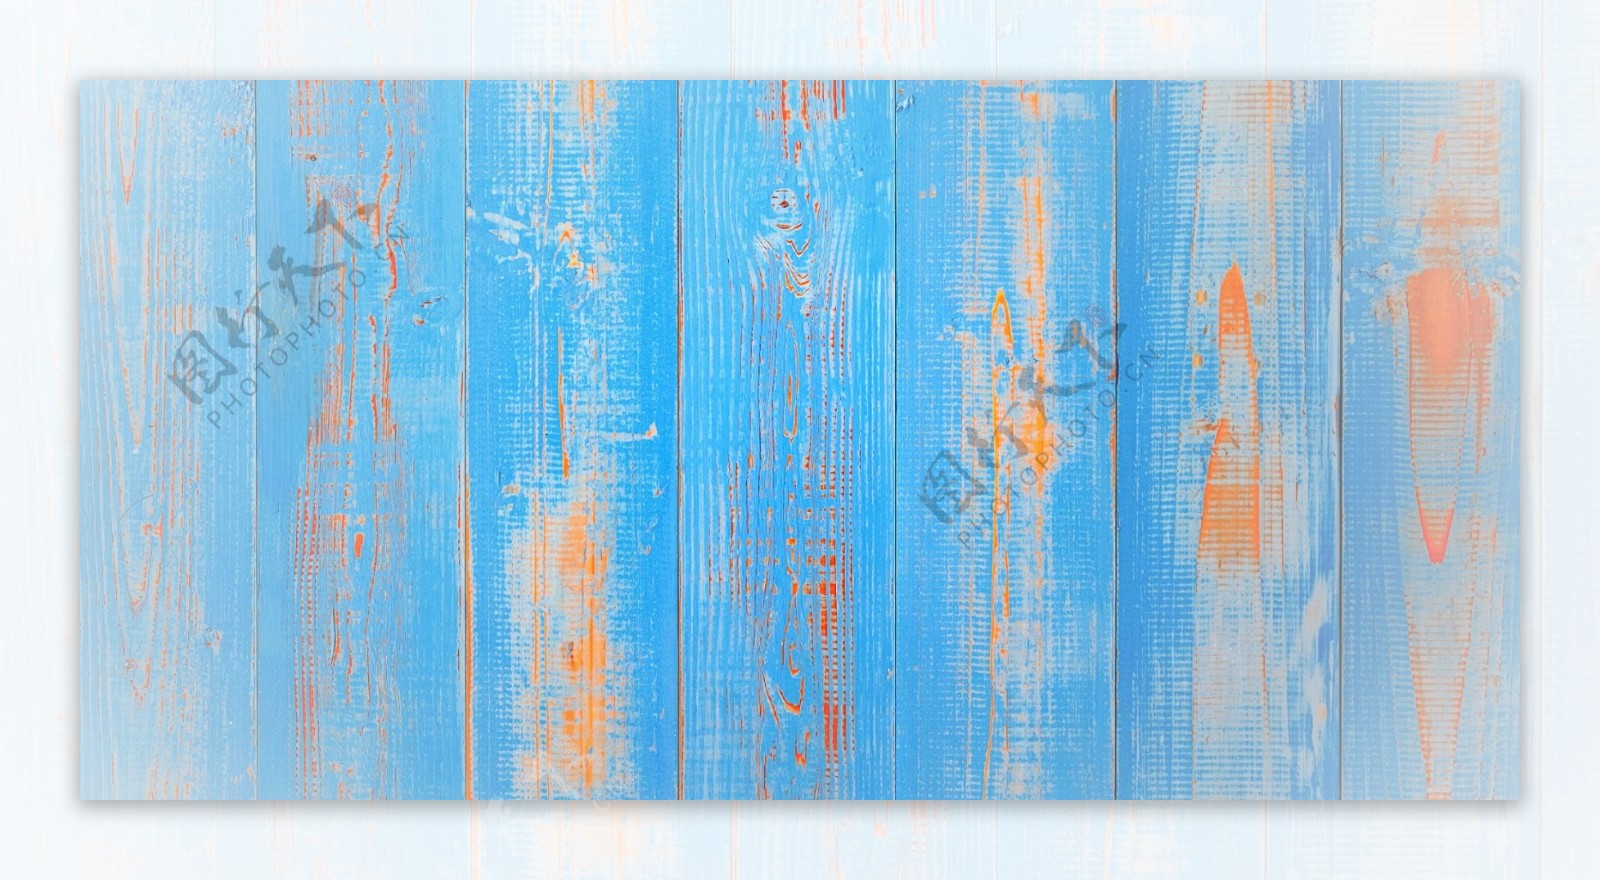 水蓝色木板清新材质纹理背景